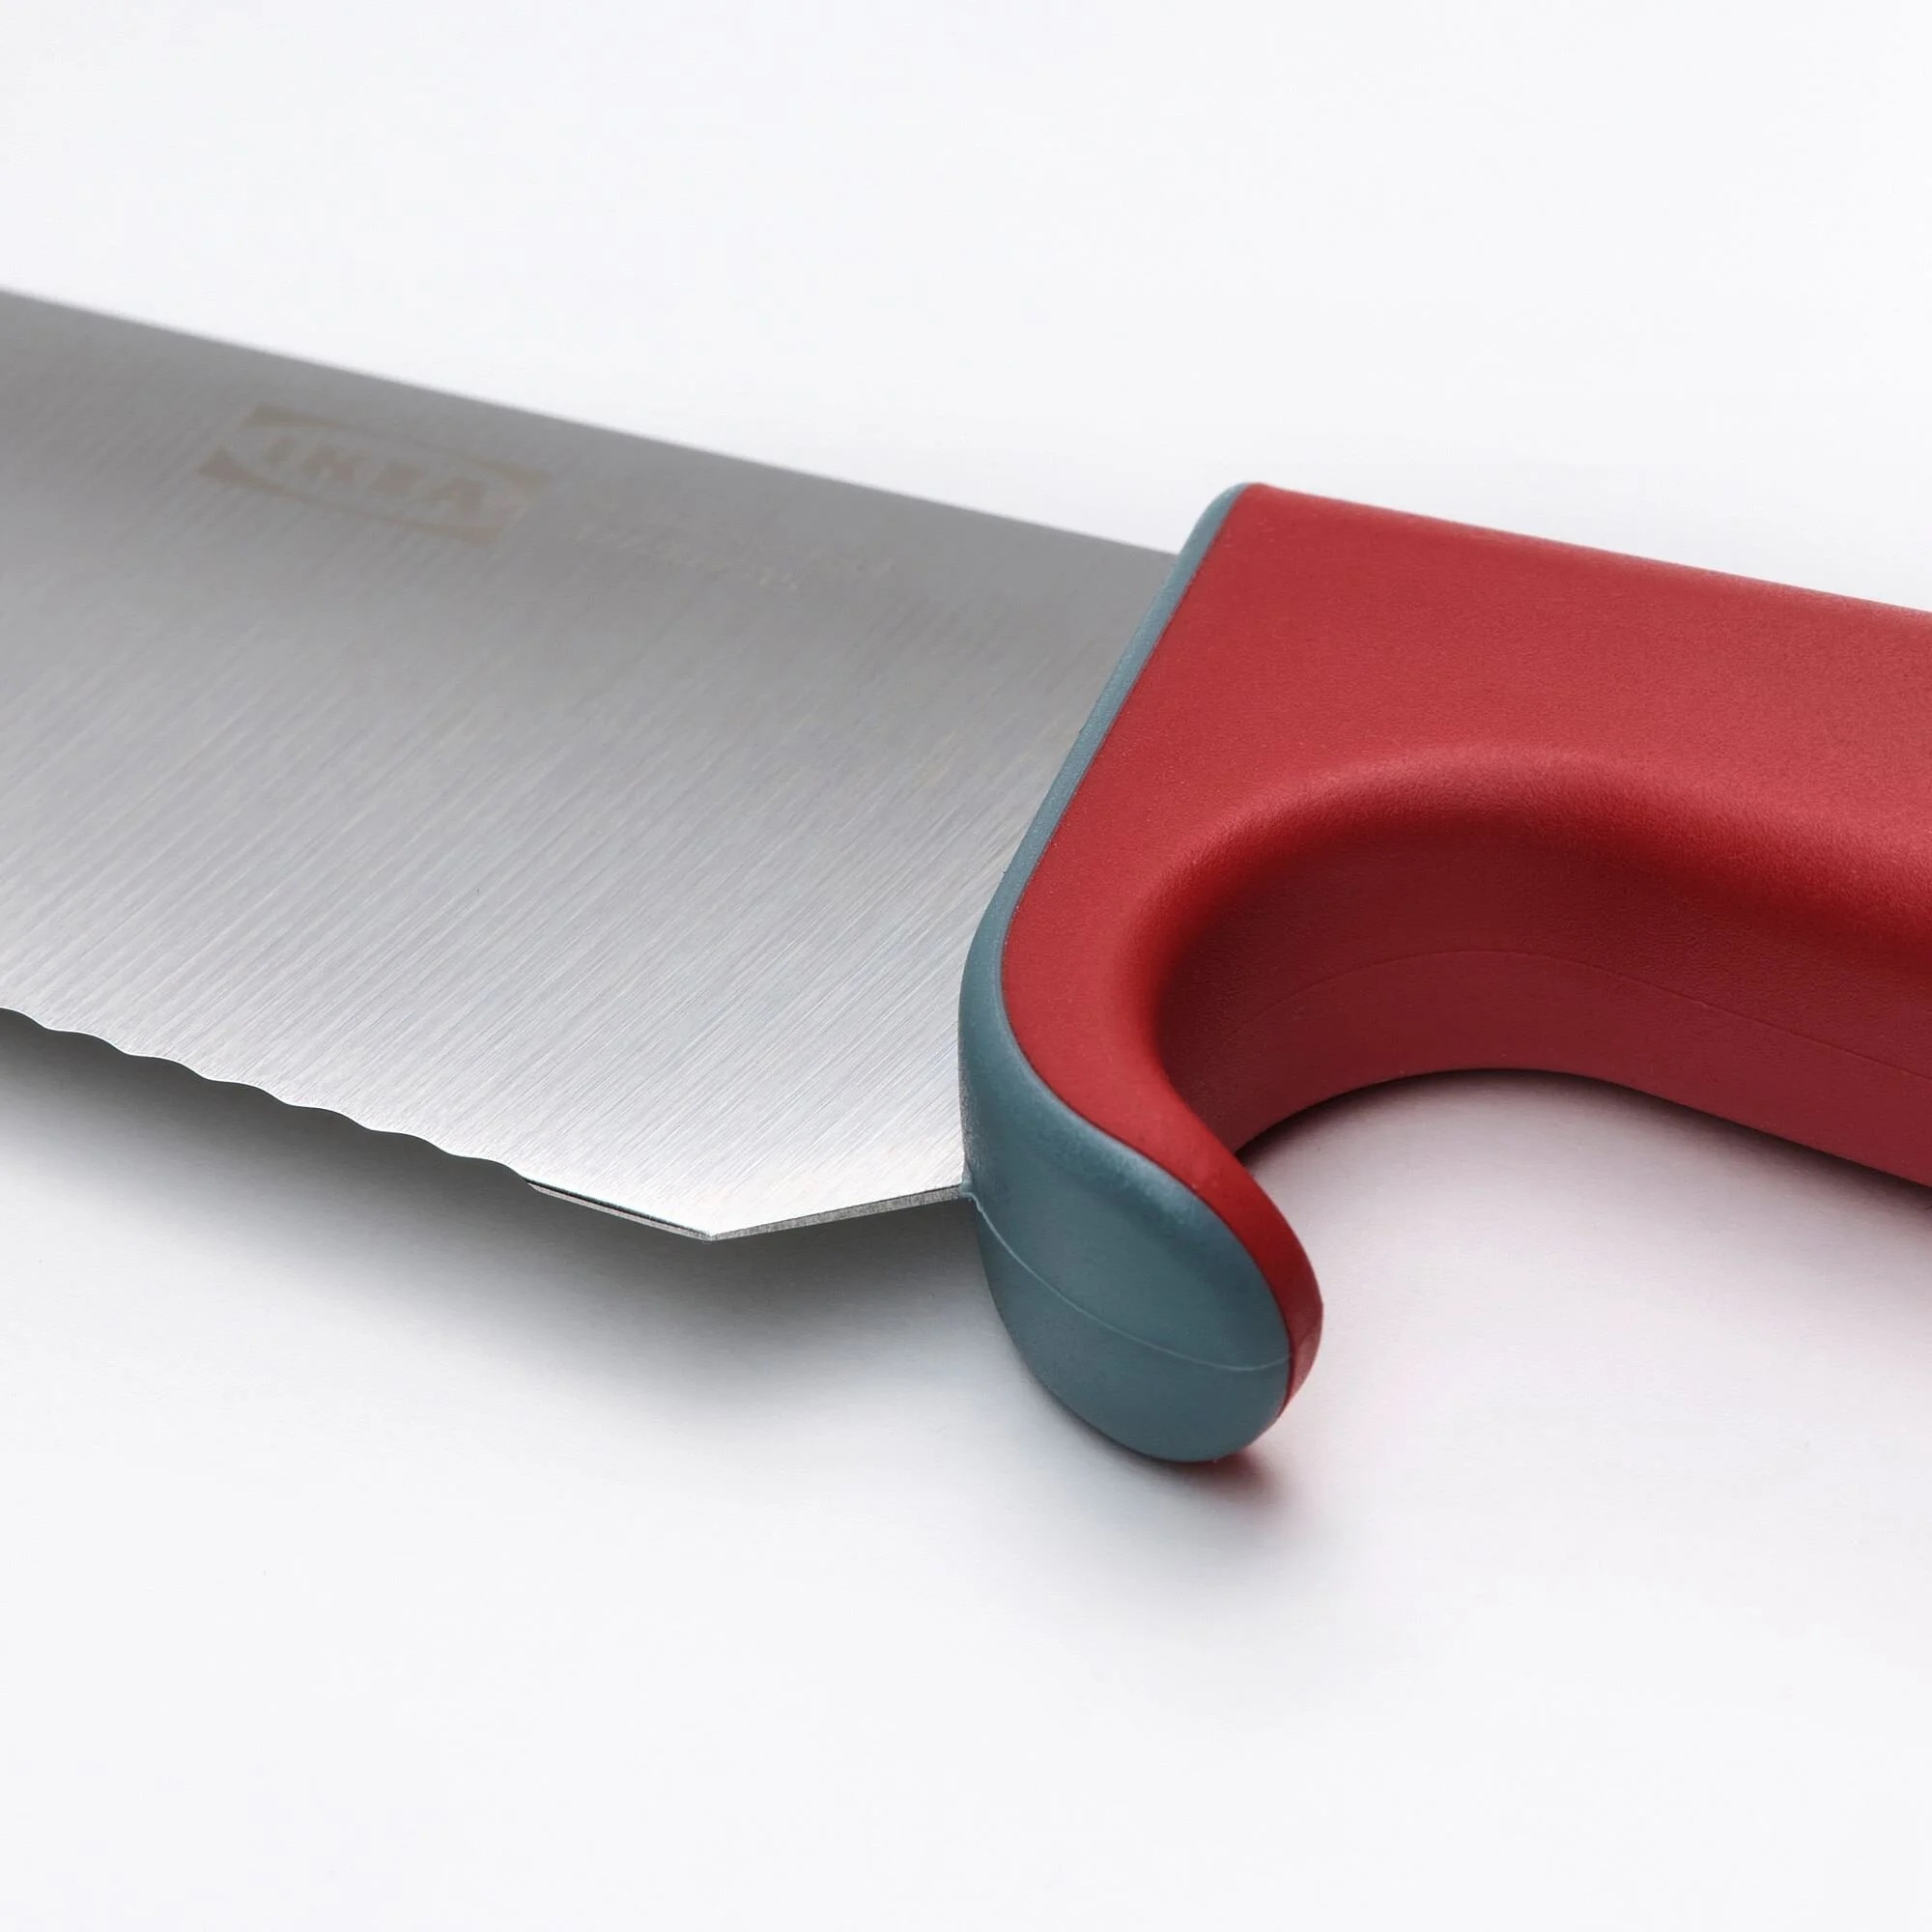 چاقو آشپزخانه ایکیا مدل SMABIT بسته 2 عددی